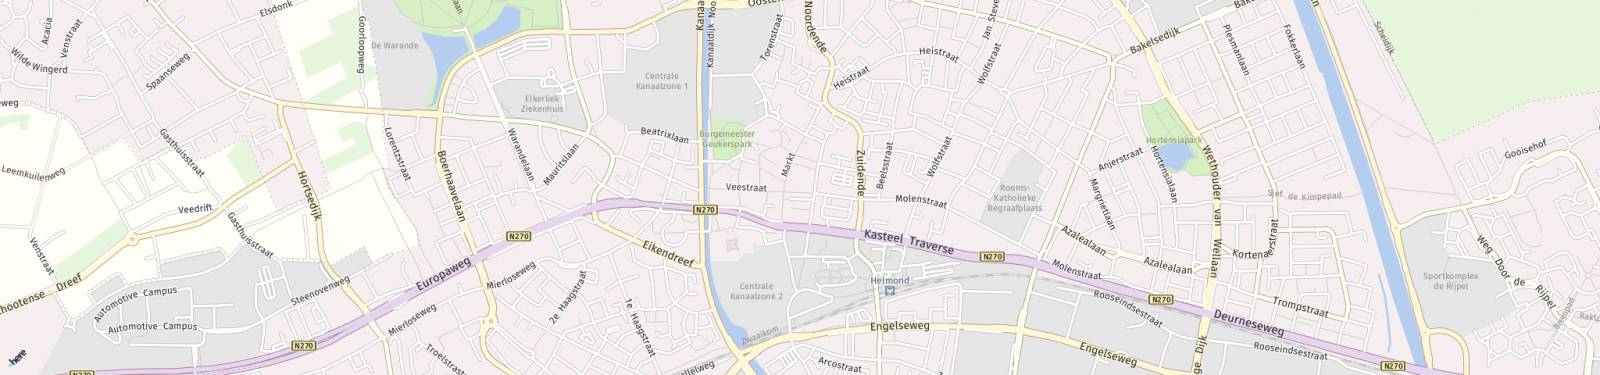 Kaart met locatie Appartement Ameidestraat 